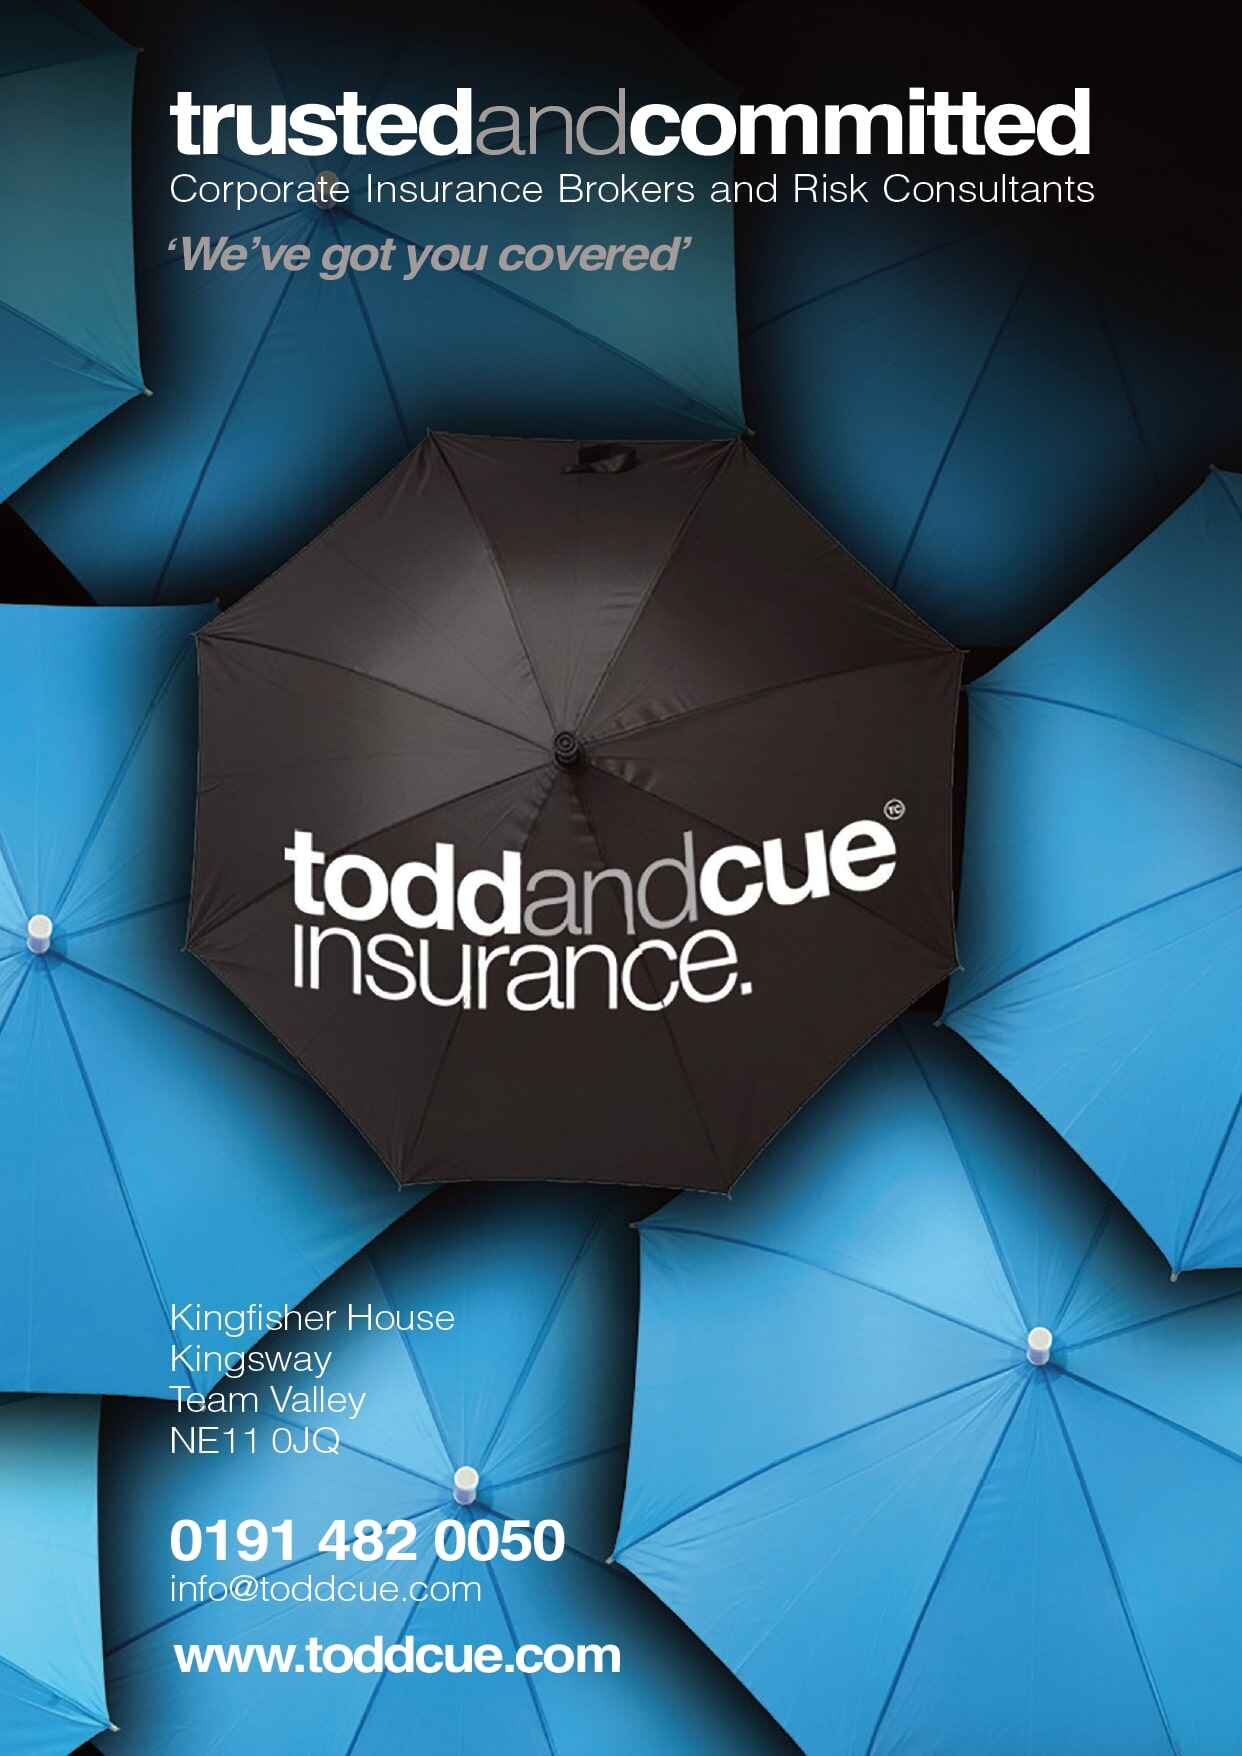 toddandcue insurance info